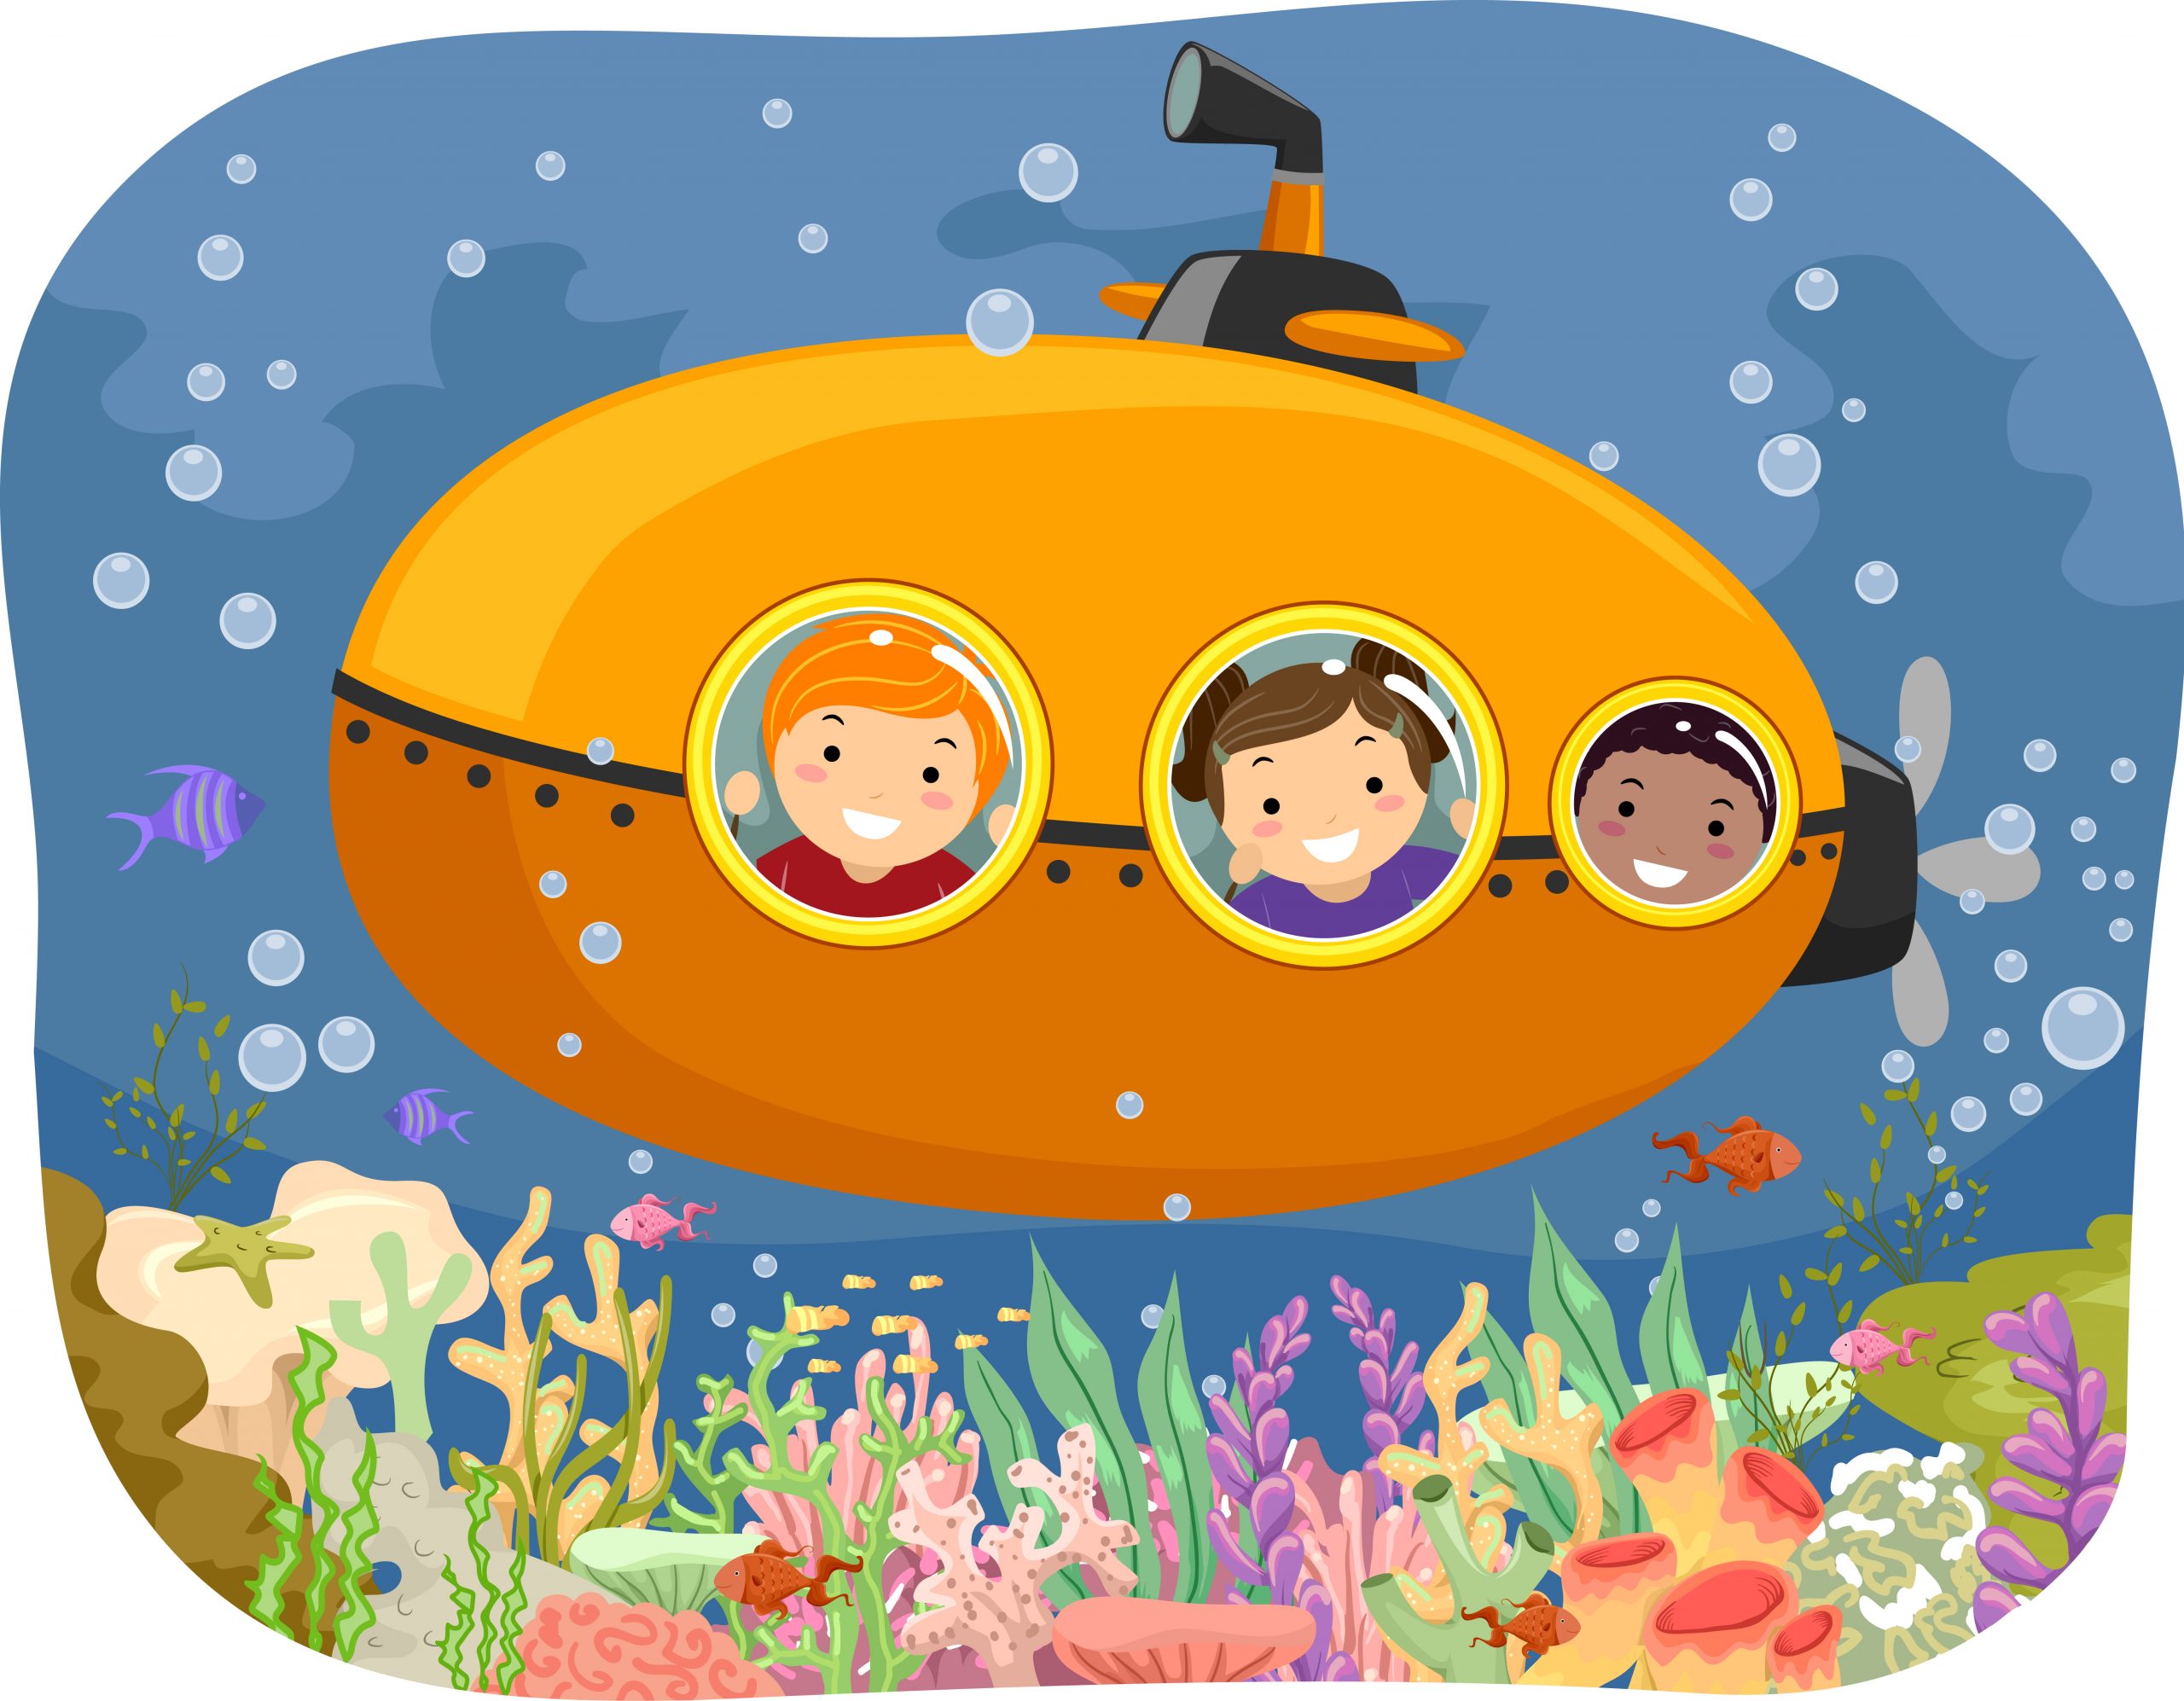 Free Family Program: Jr. Ocean Explorers - Program Full!